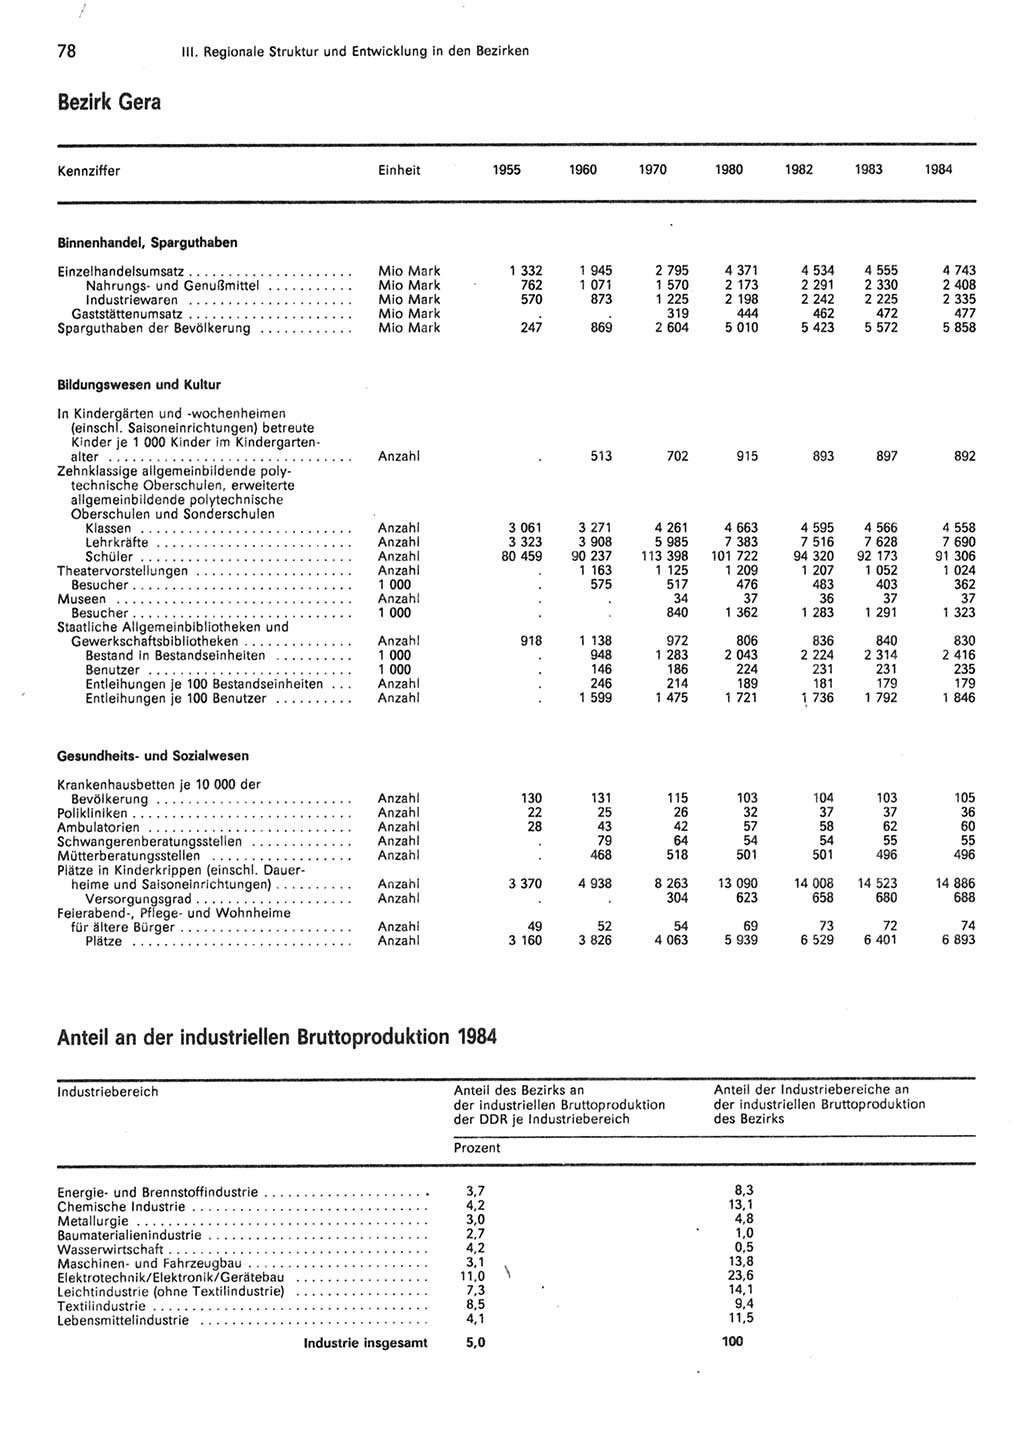 Statistisches Jahrbuch der Deutschen Demokratischen Republik (DDR) 1985, Seite 78 (Stat. Jb. DDR 1985, S. 78)